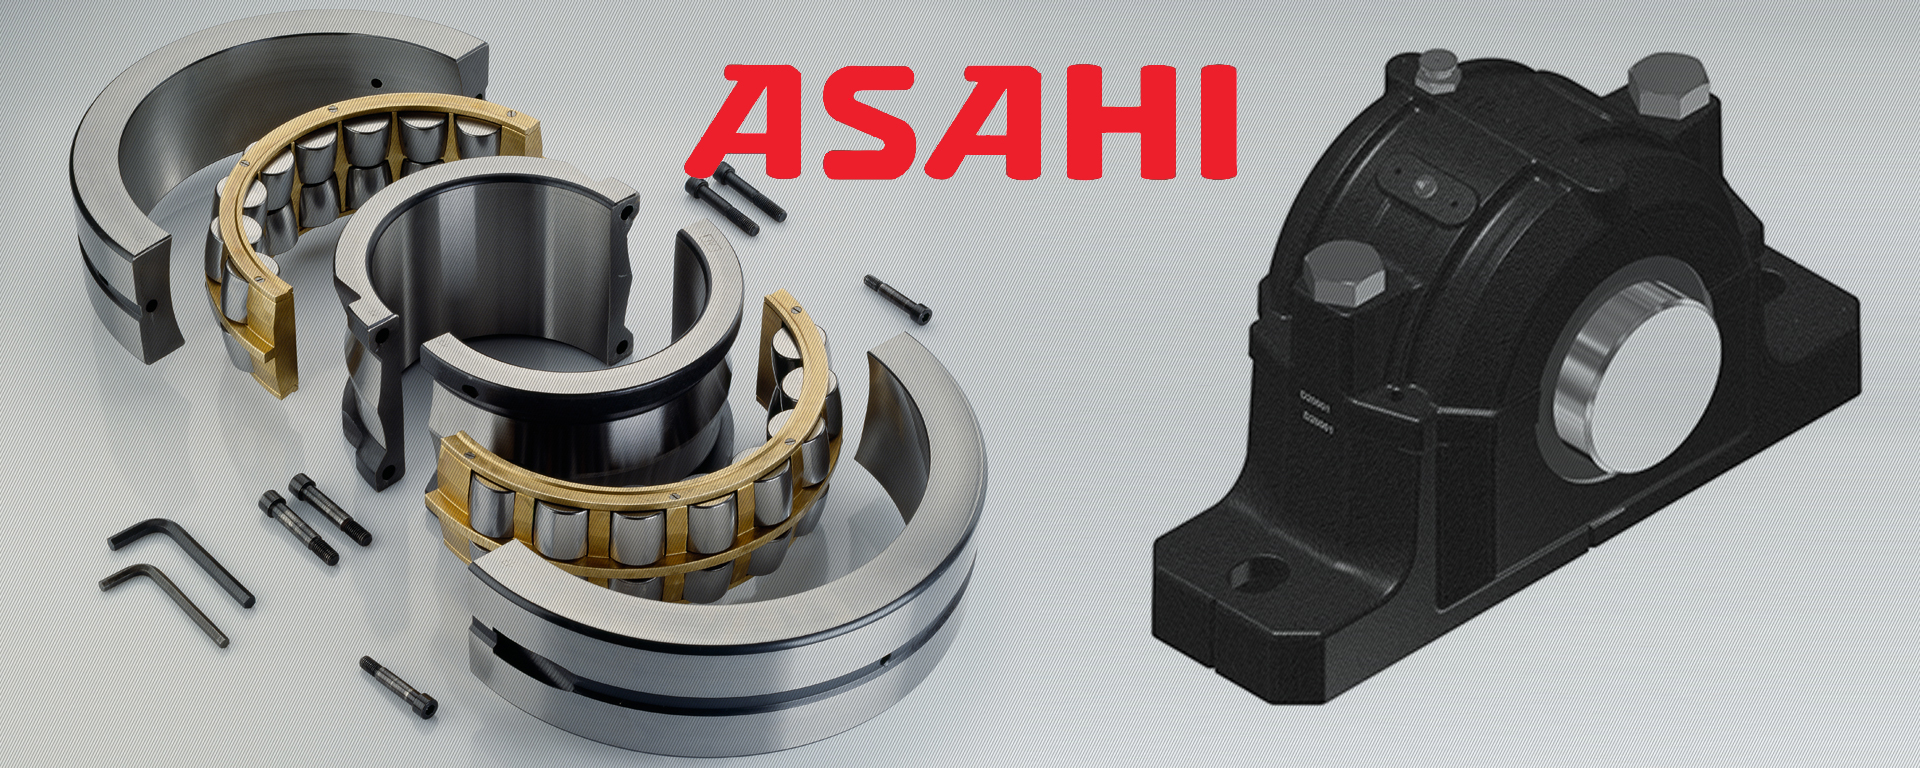 ASAHI轴承 - 上海卡美伦轴承有限公司